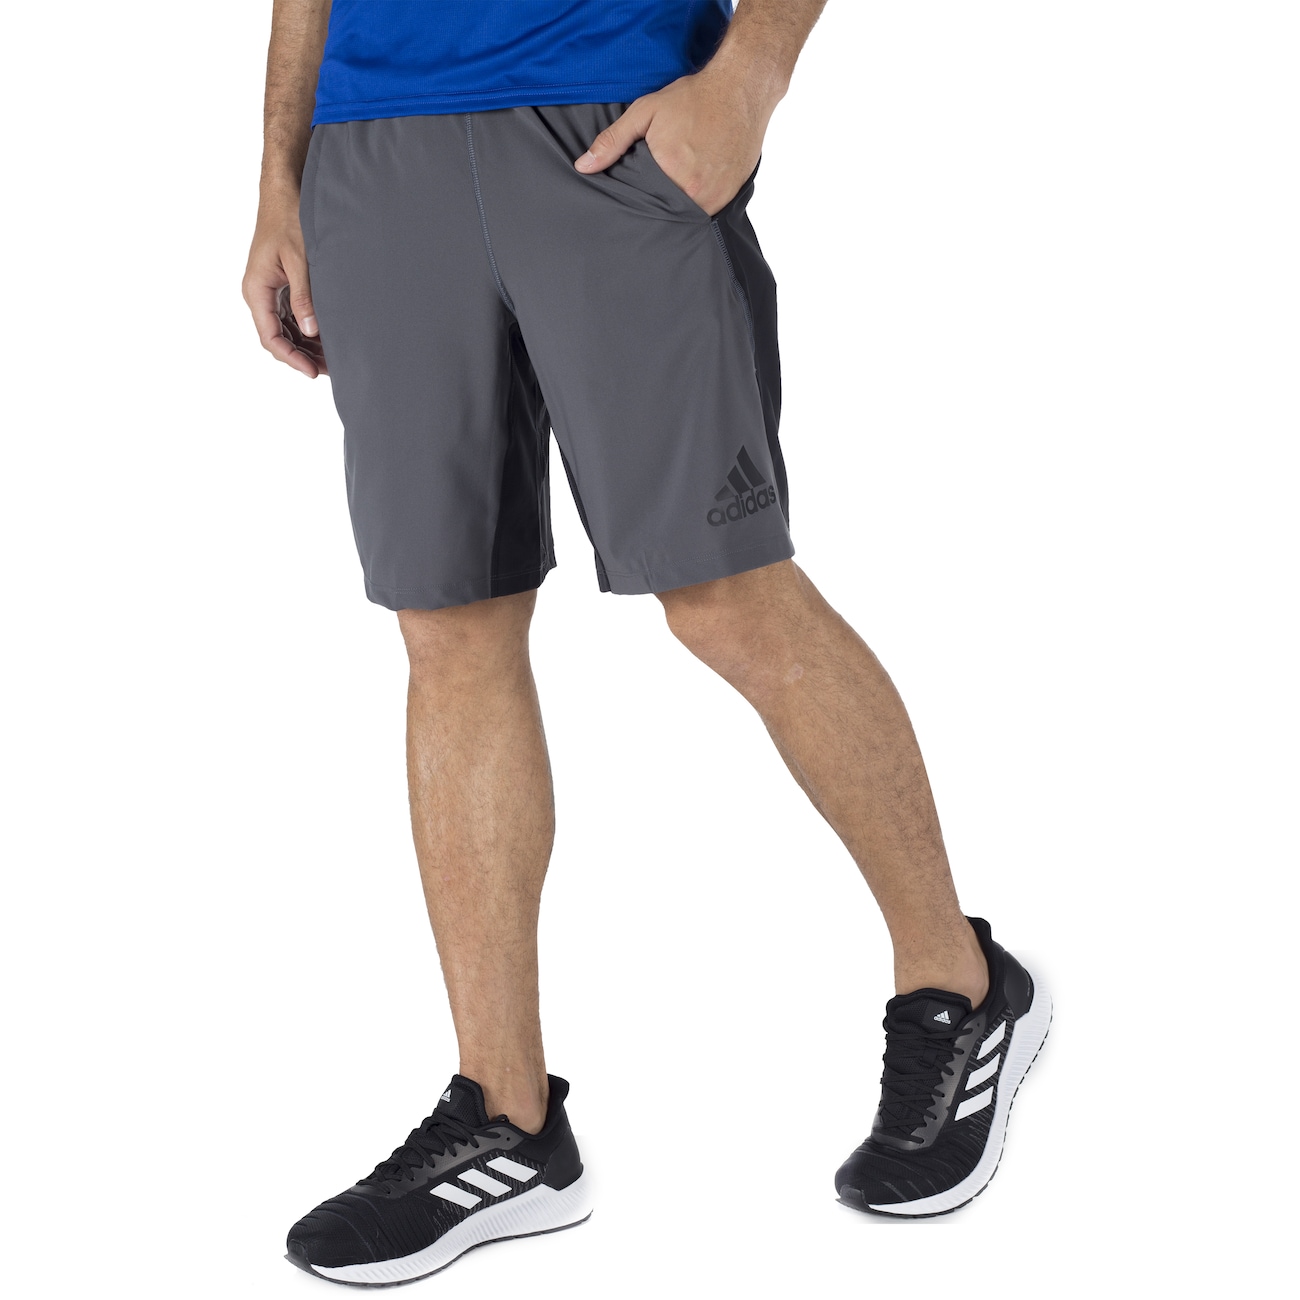 shorts de academia masculino adidas